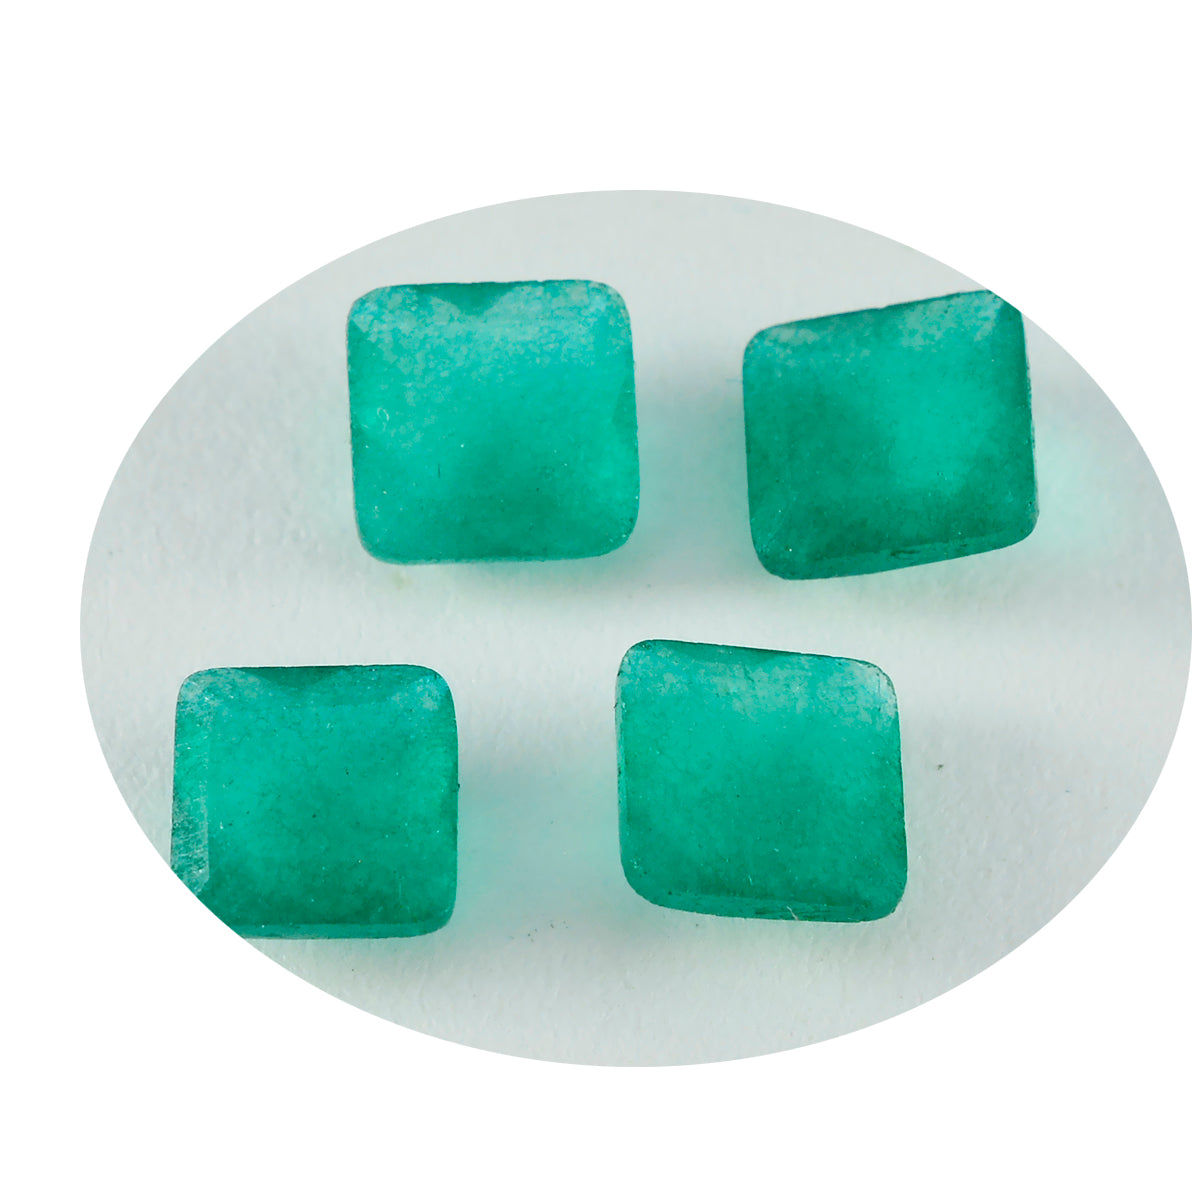 Riyogems 1 Stück echter grüner Jaspis, facettiert, 14 x 14 mm, quadratische Form, Edelsteine in AAA-Qualität